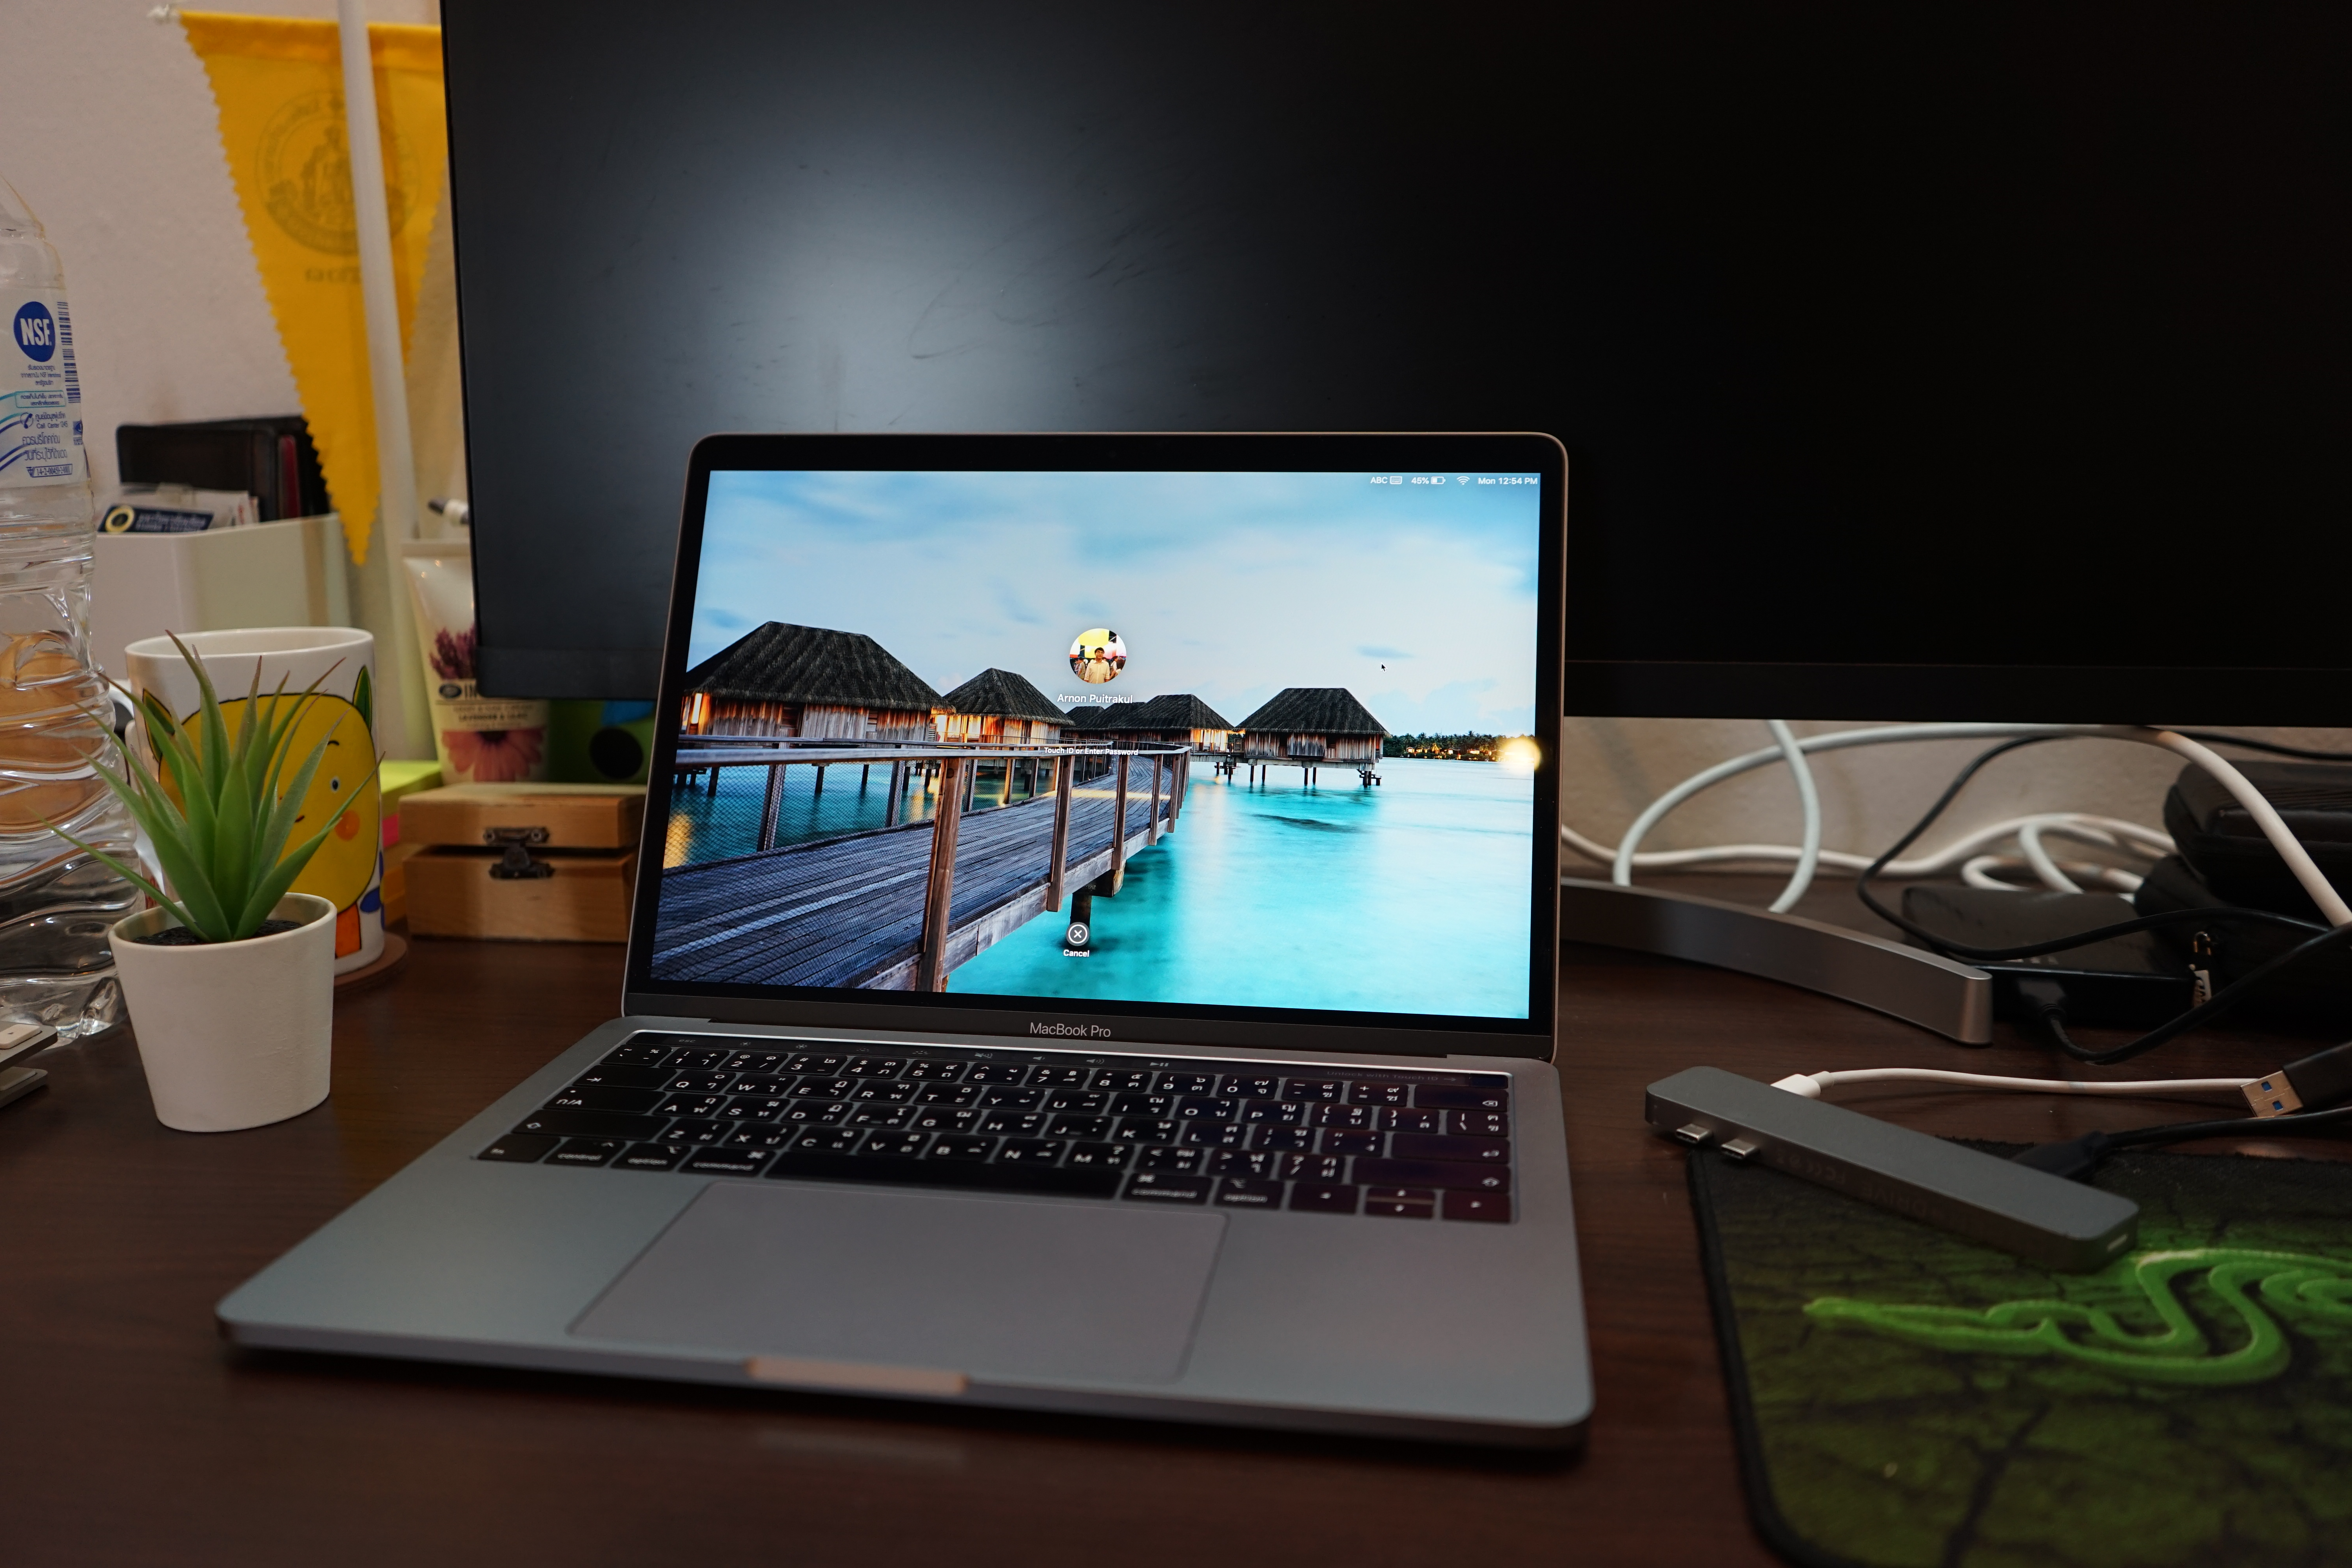 MacBook Pro 13-inch 2018